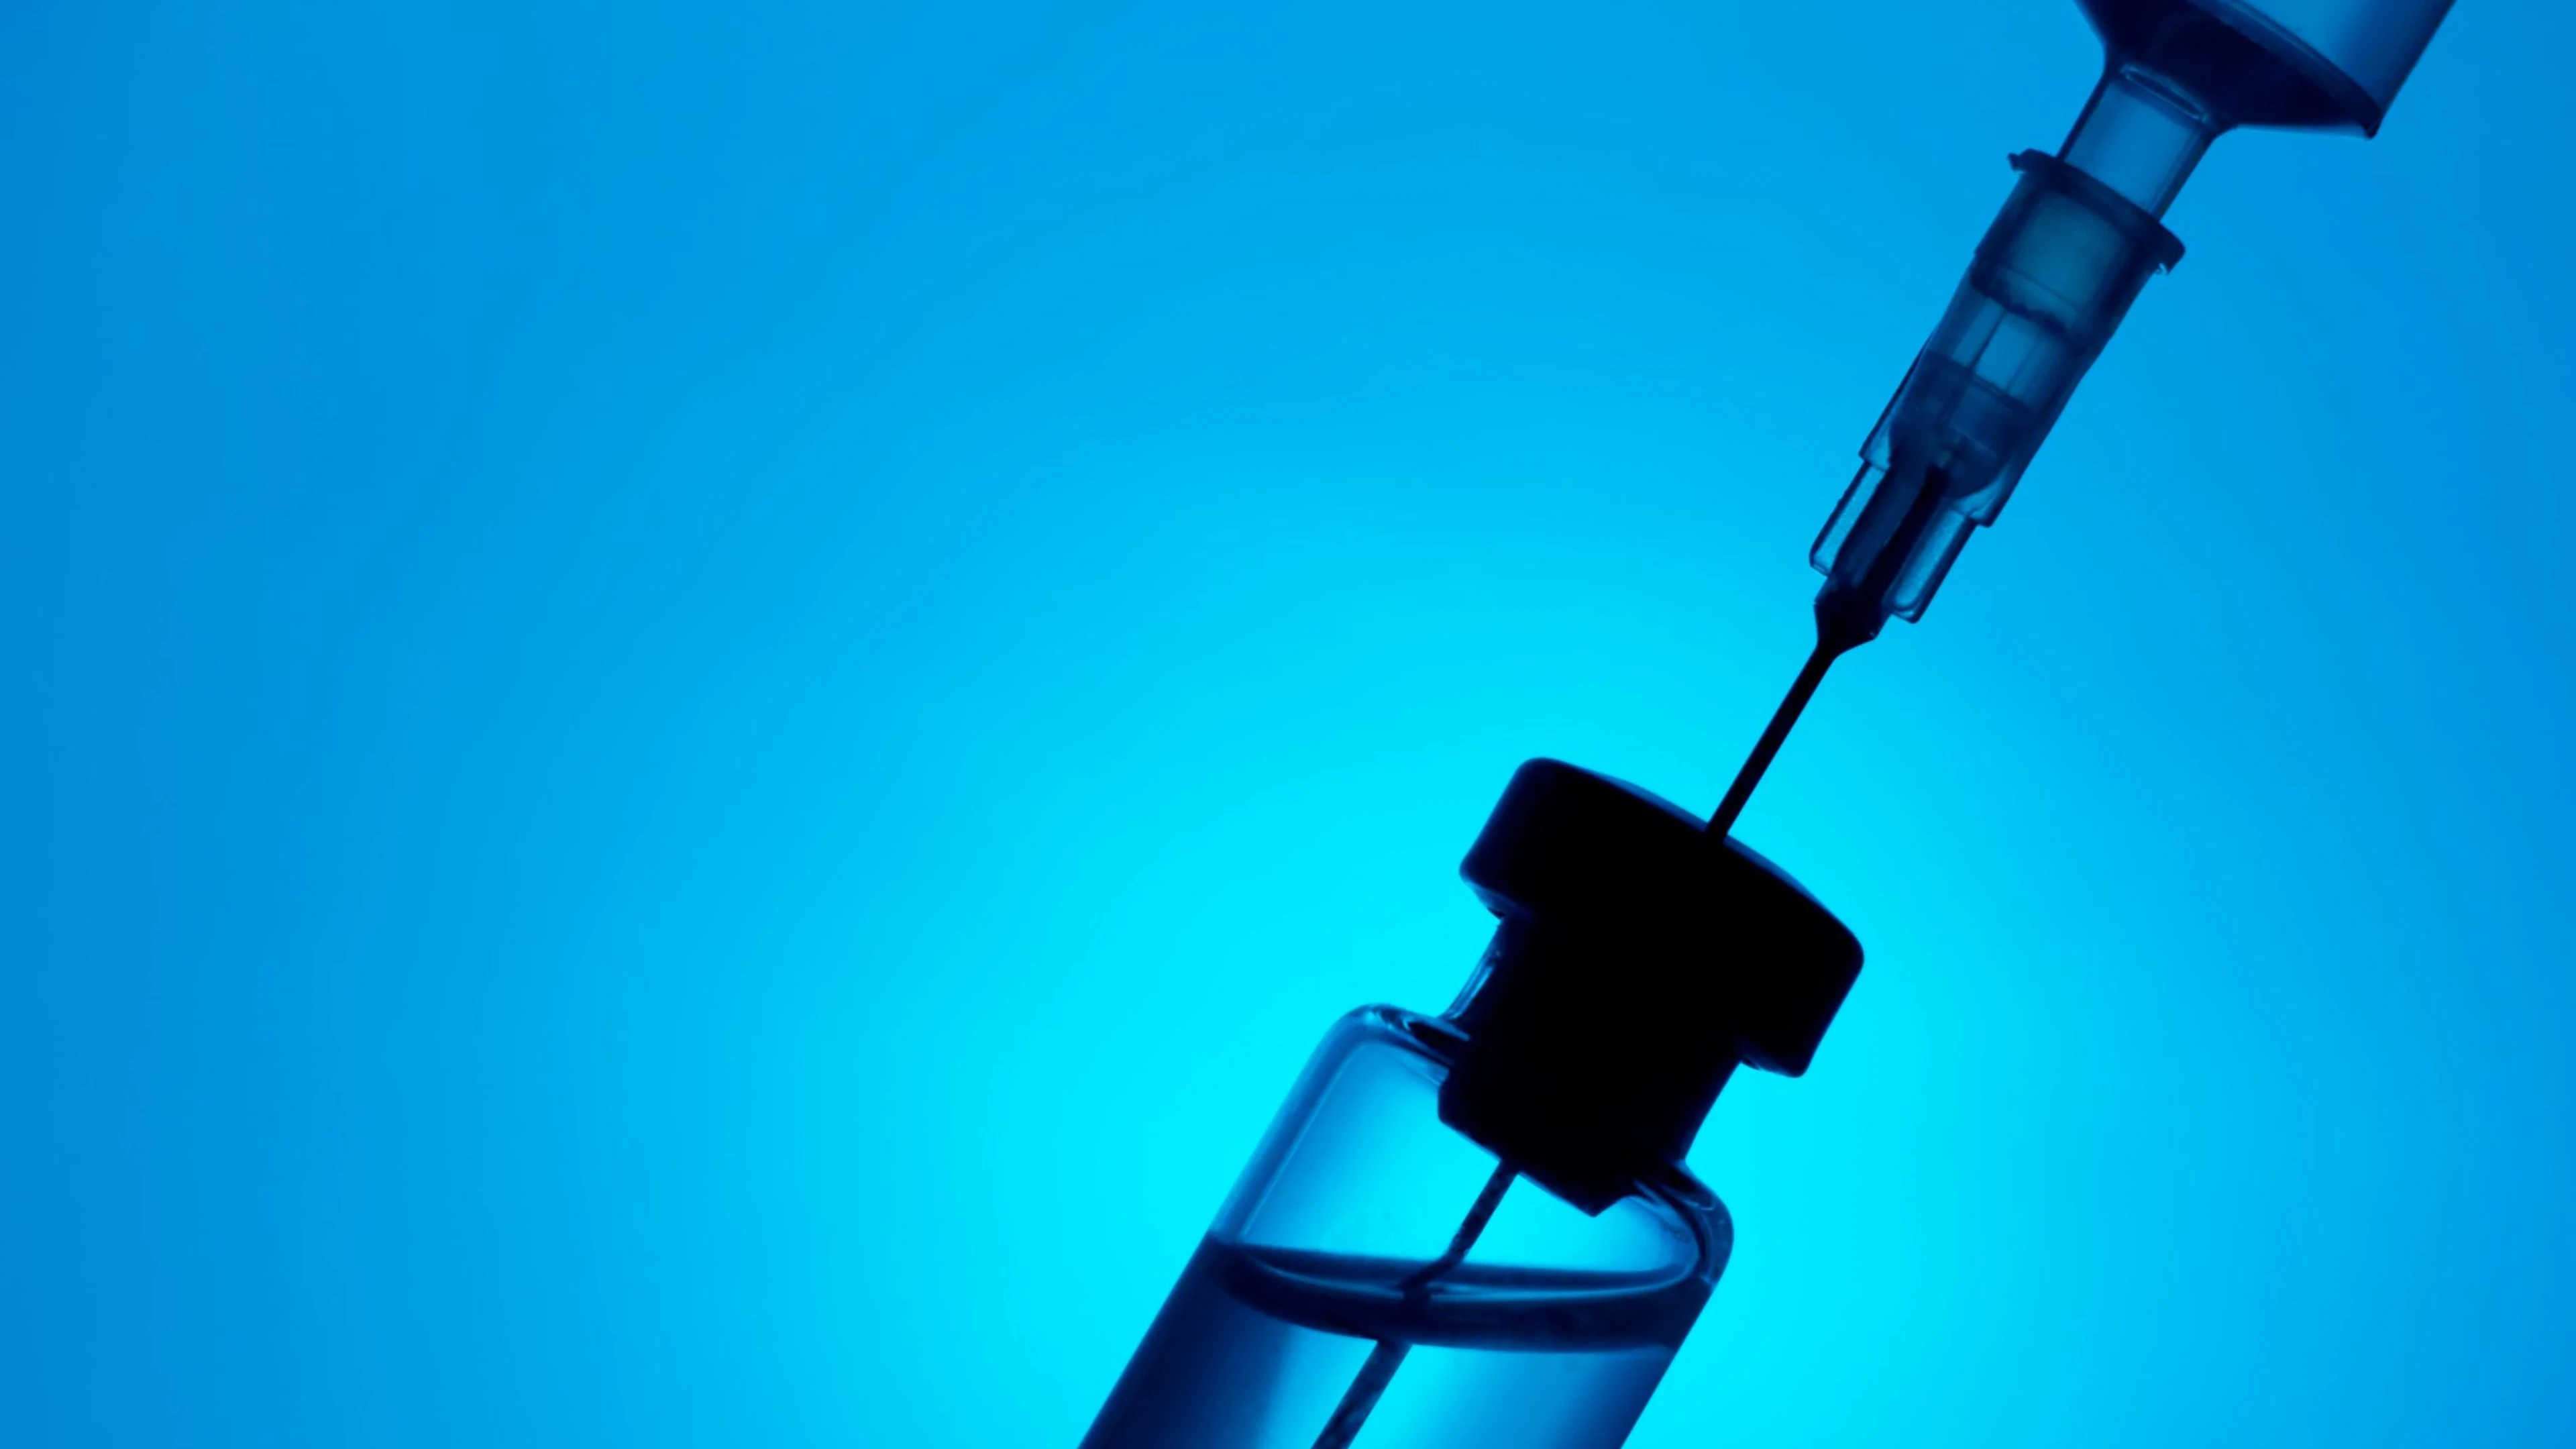 Syringe,And,Medicine,Vial,On,Blue,Background